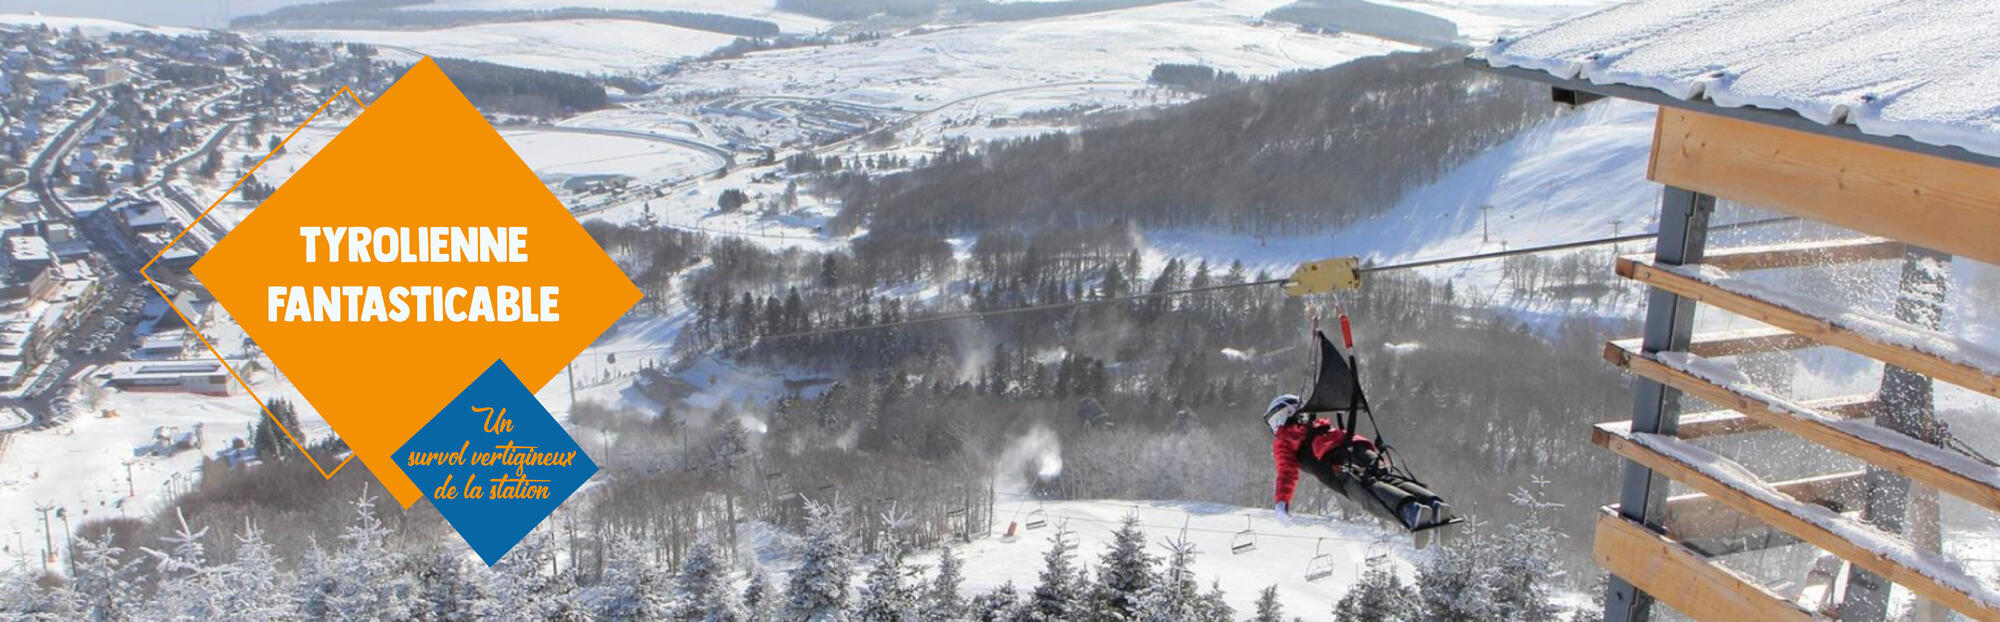 ◅ Tubing et draisienne, SAEML Pavin-Sancy, vente de forfaits ski en ligne  pour le domaine skiable de Super Besse